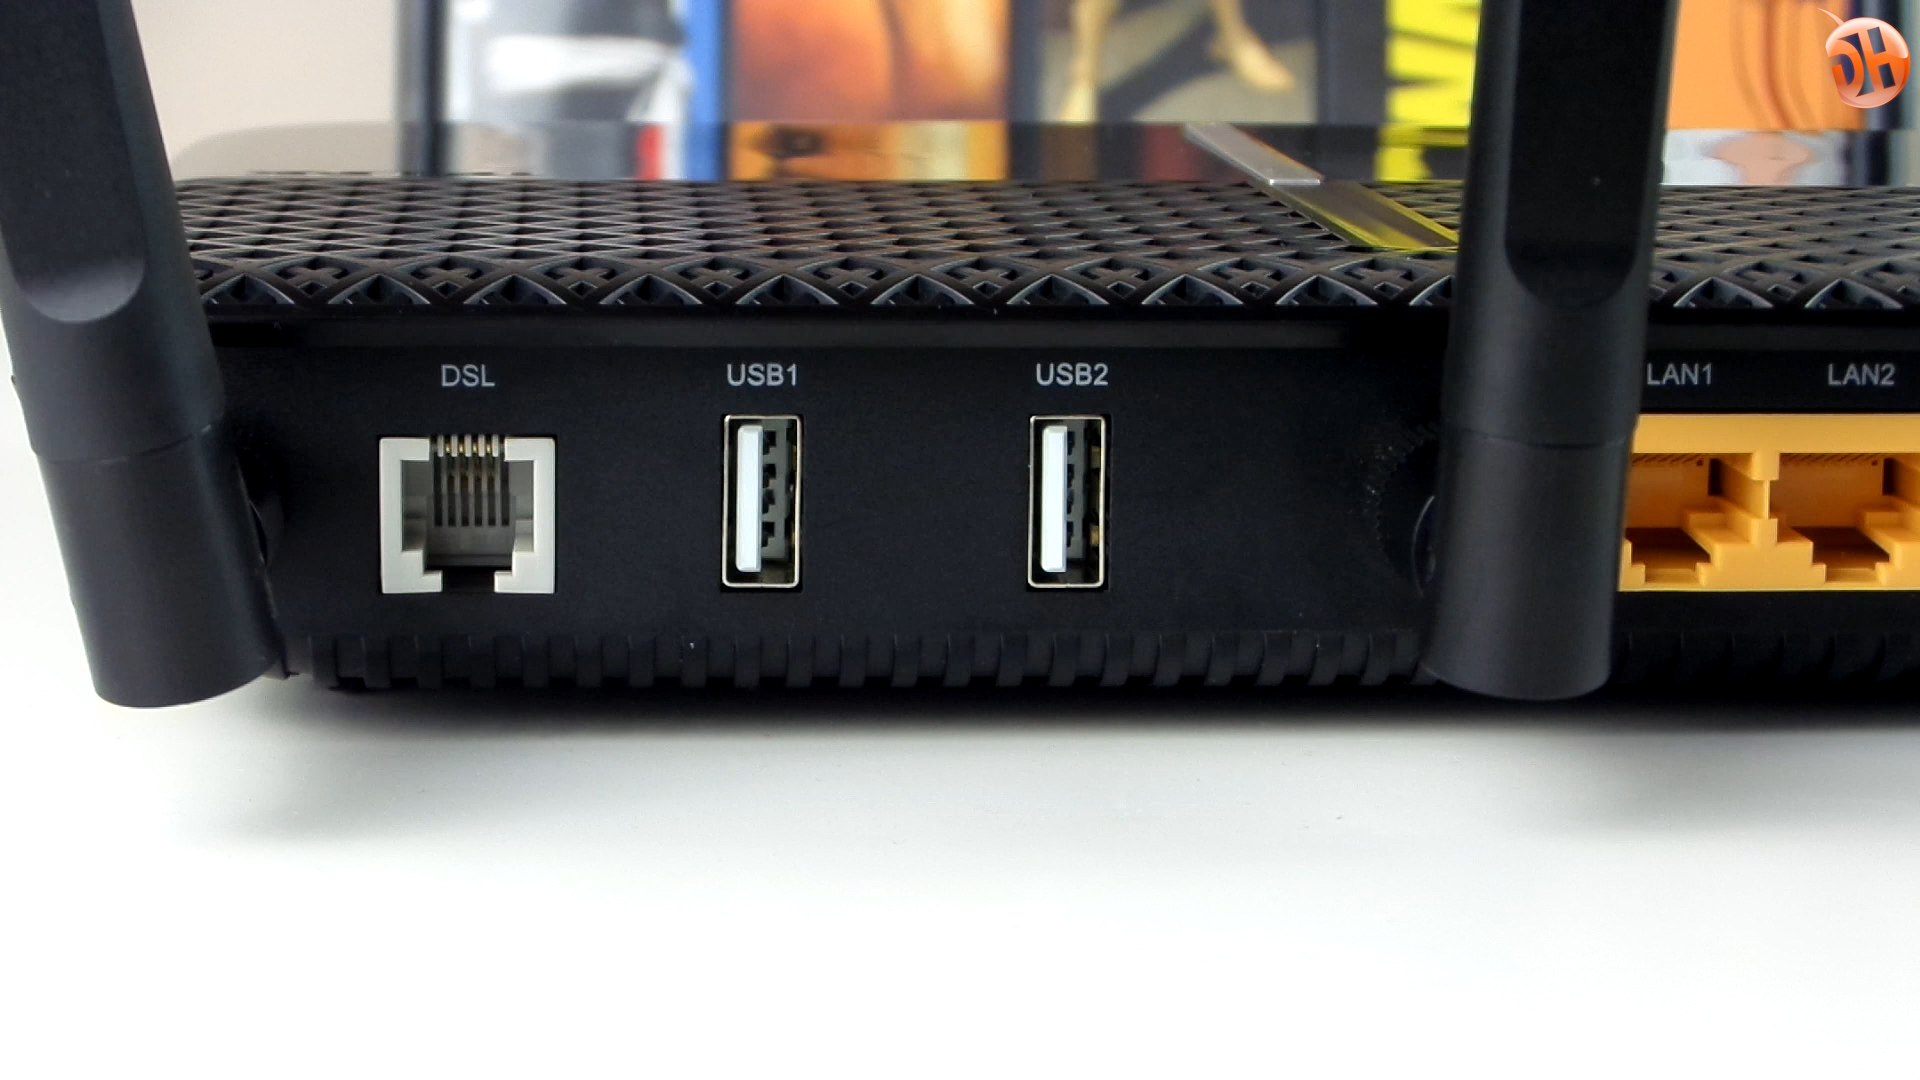 TP-Link Archer VR600 'Stabil ve Şık' modem/router'ı inceliyoruz